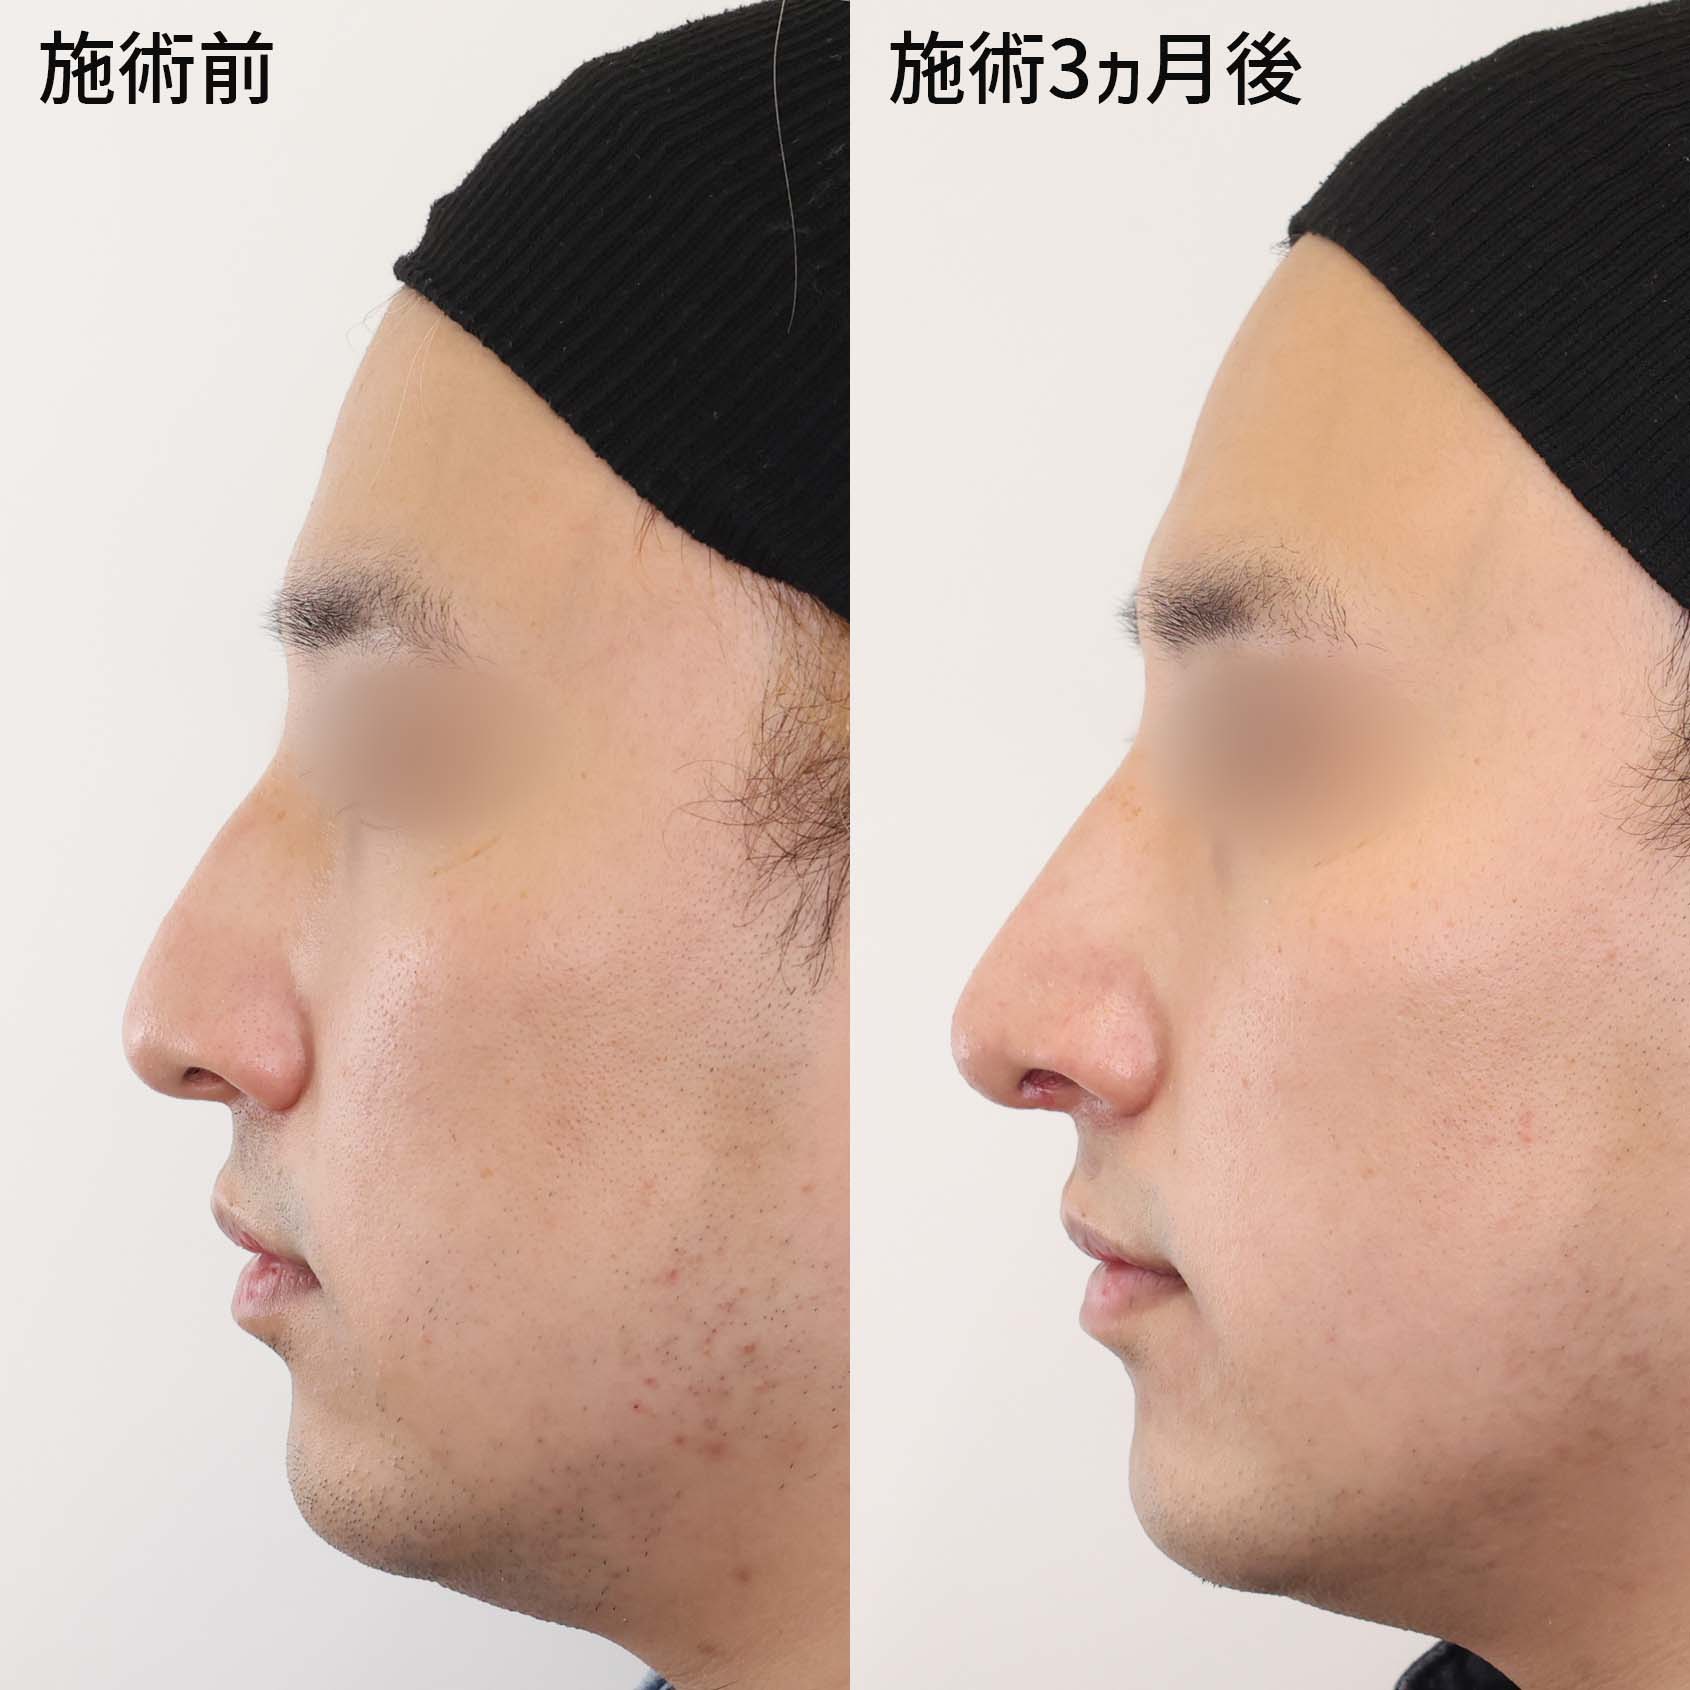 変わる 形 鼻 の 鼻を小さくする方法！鼻が大きいのは改善できる！美容家の教える簡単ケア